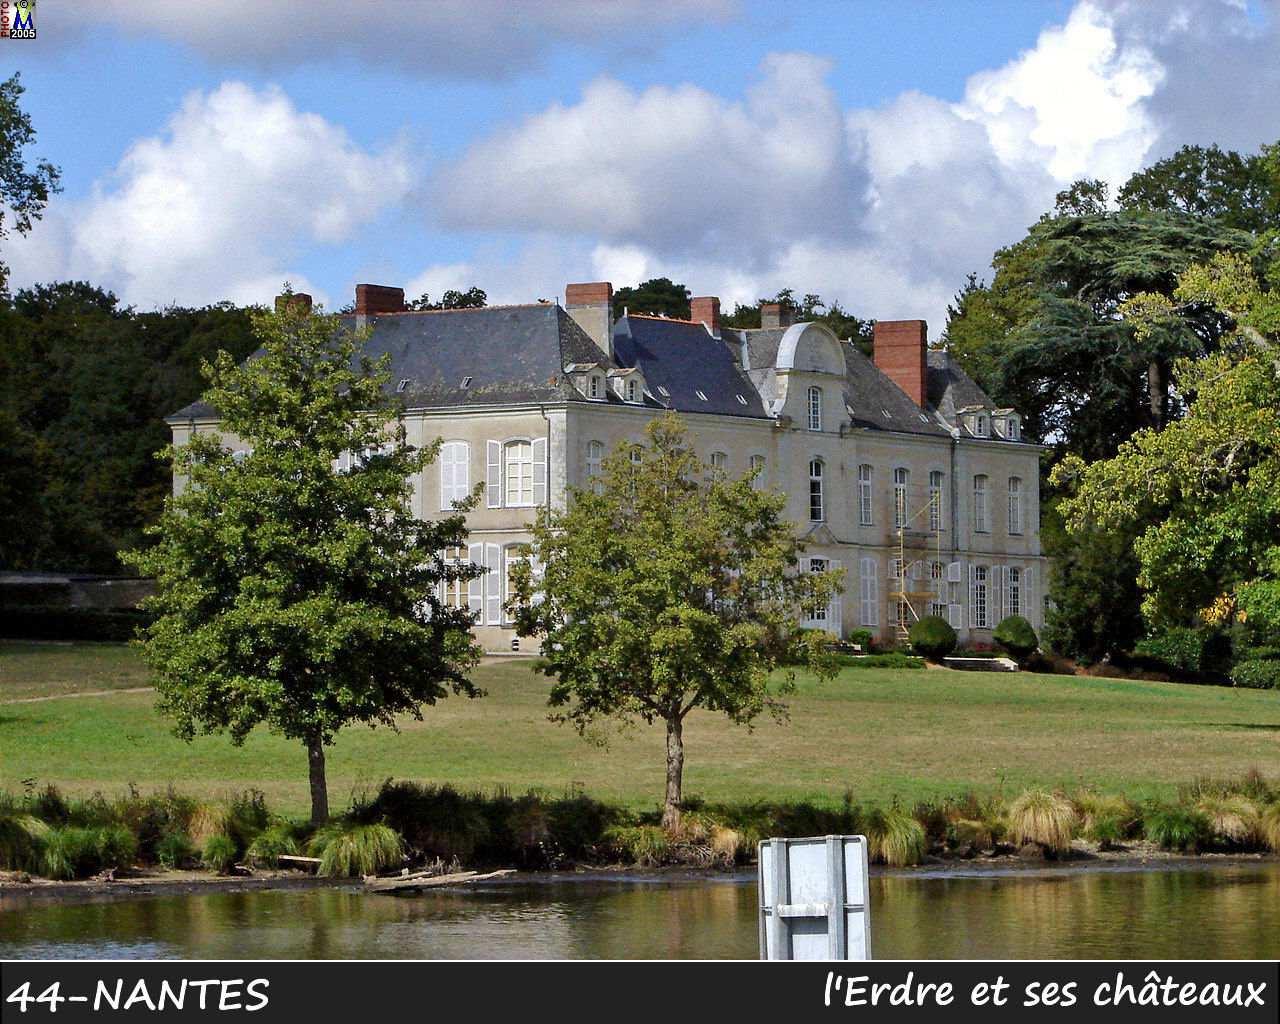 44NANTES_erdre-chateau_126.jpg